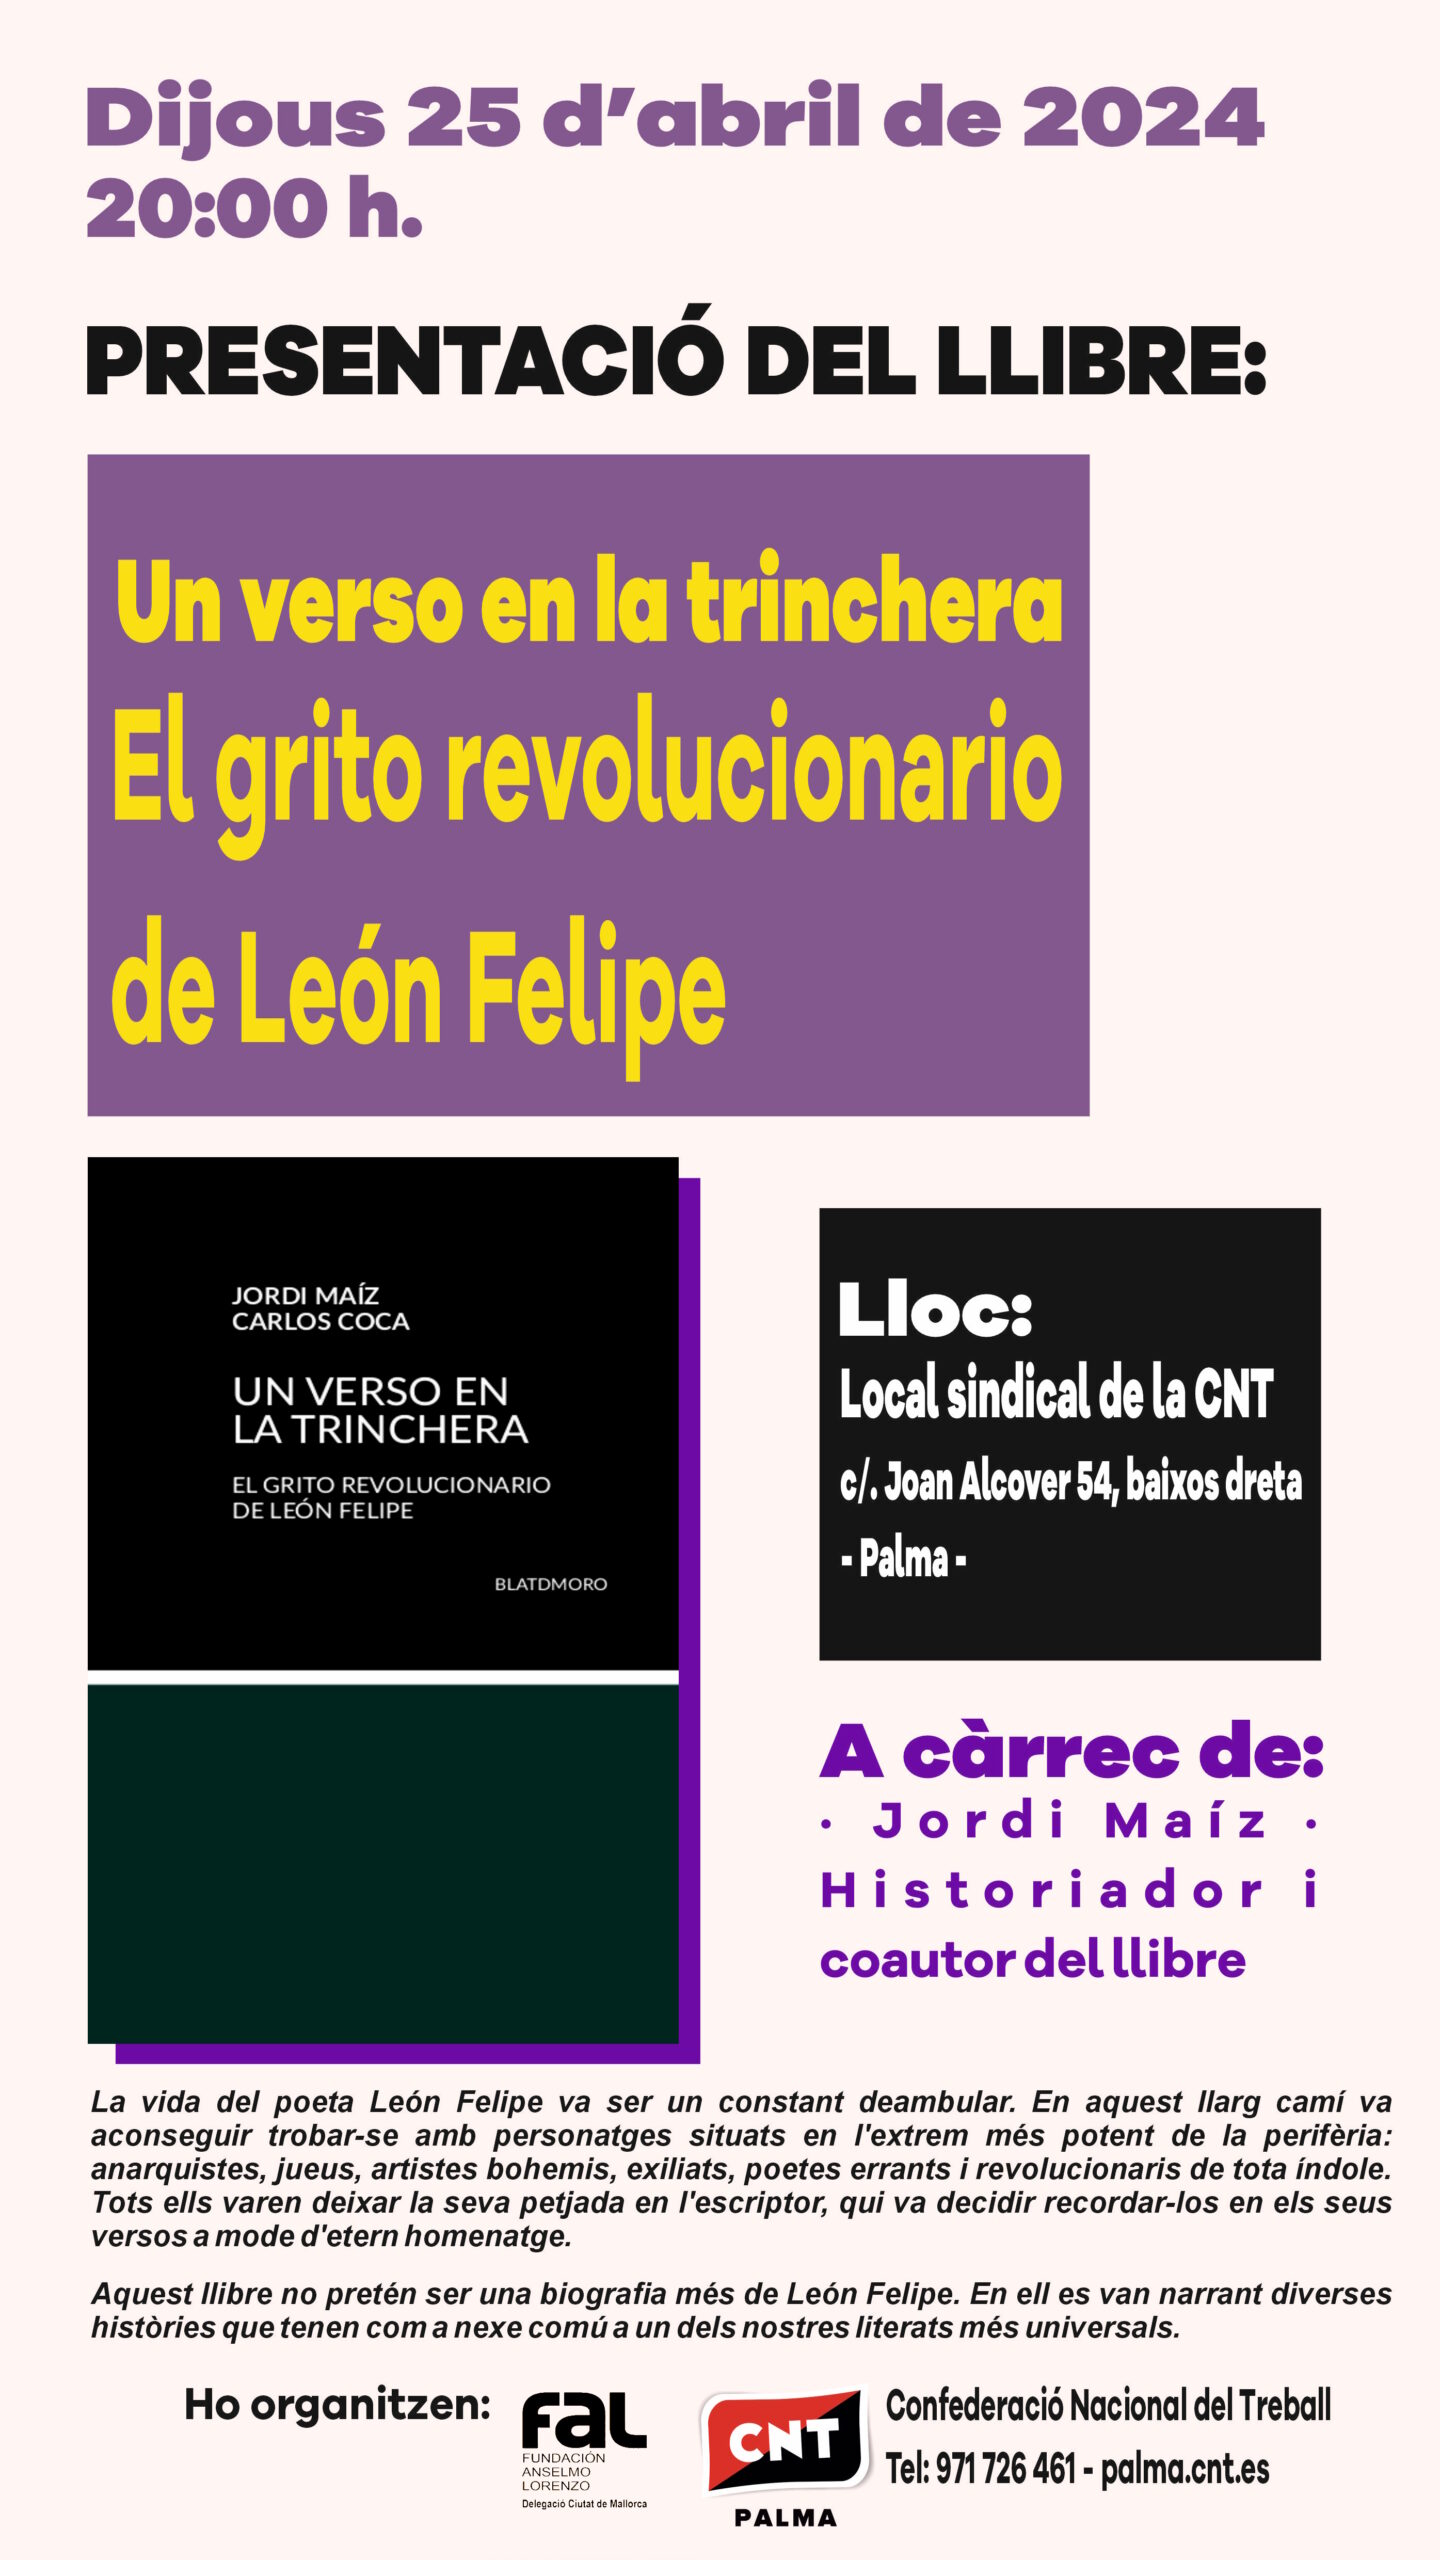 Presentació del llibre: “Un verso en la trinchera. El grito revolucionario de León Felipe”.